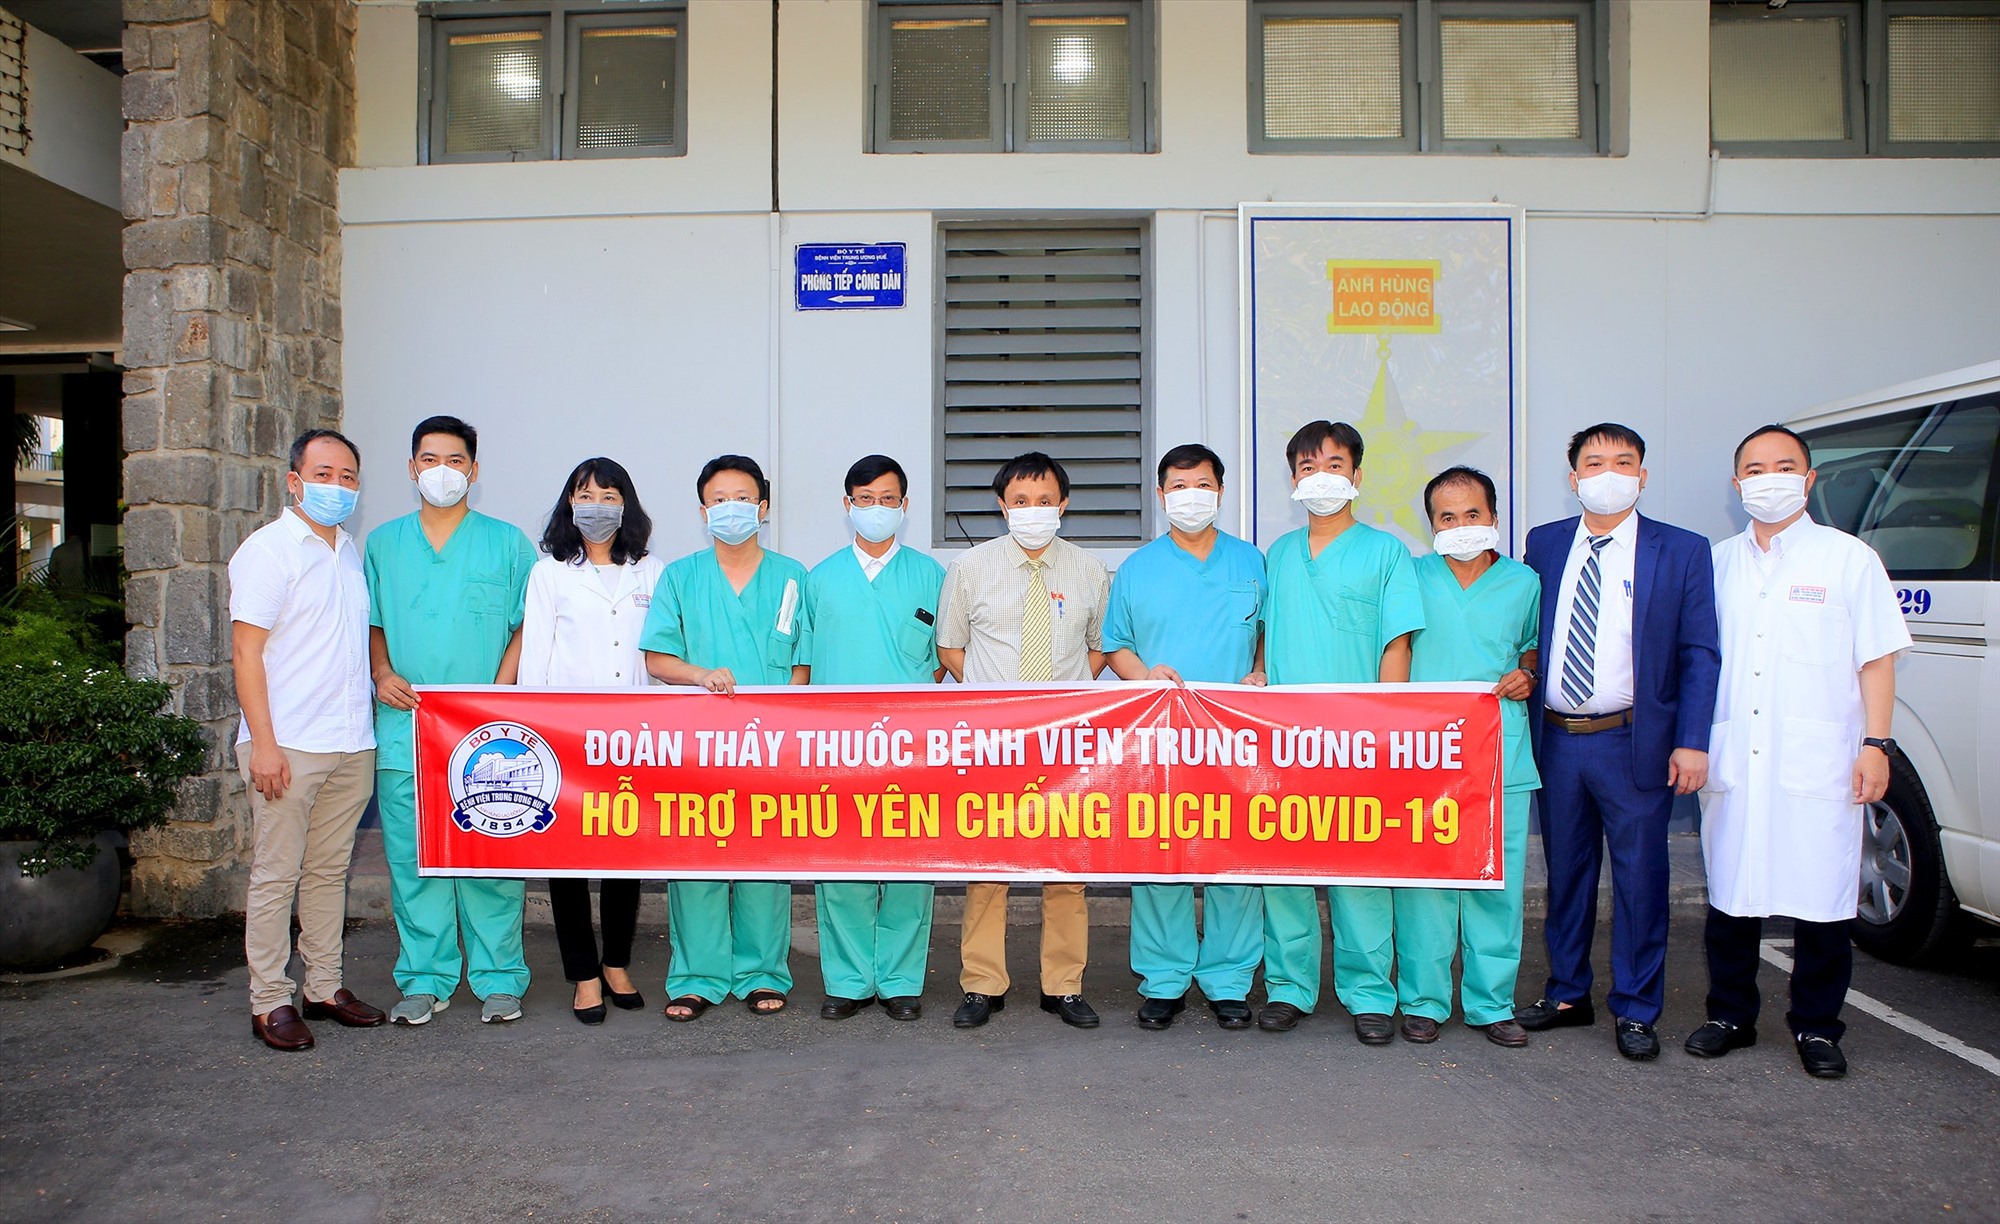 Trong đợt “tiếp sức” cho Phú Yên lần này, Bệnh viện Trung ương Huế đã cử đoàn y, bác sĩ tình nguyện gồm 6 thành viên là những chuyên gia thuộc các lĩnh vực hồi sức tích cực, hồi sức tim mạch, chống độc...